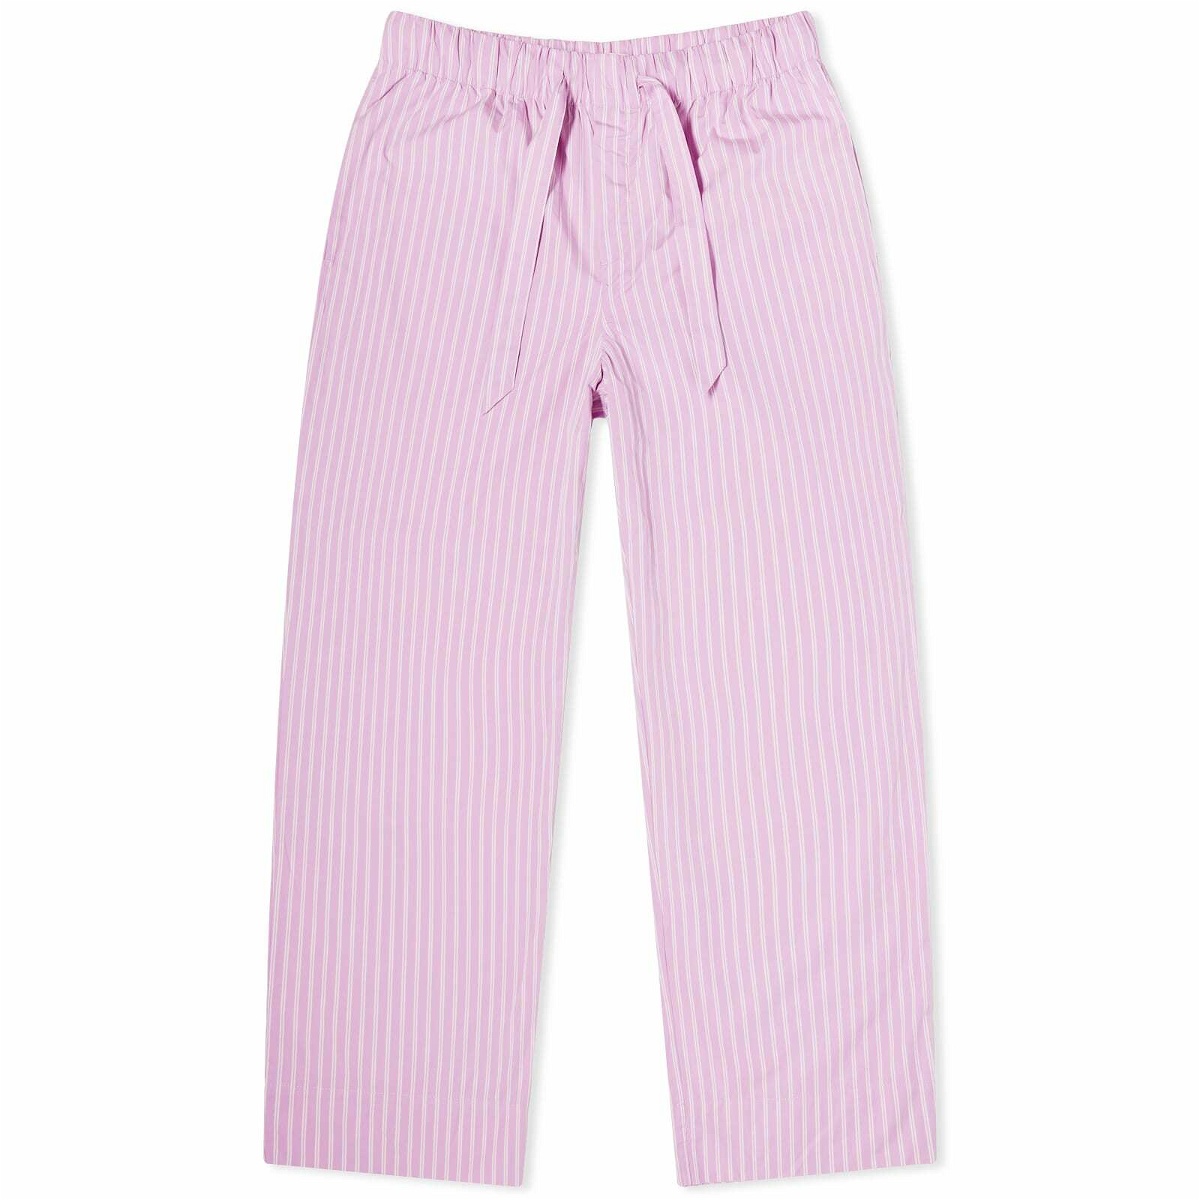 Tekla Fabrics Tekla Sleep Pant in Purple Pink Stripes Tekla Fabrics